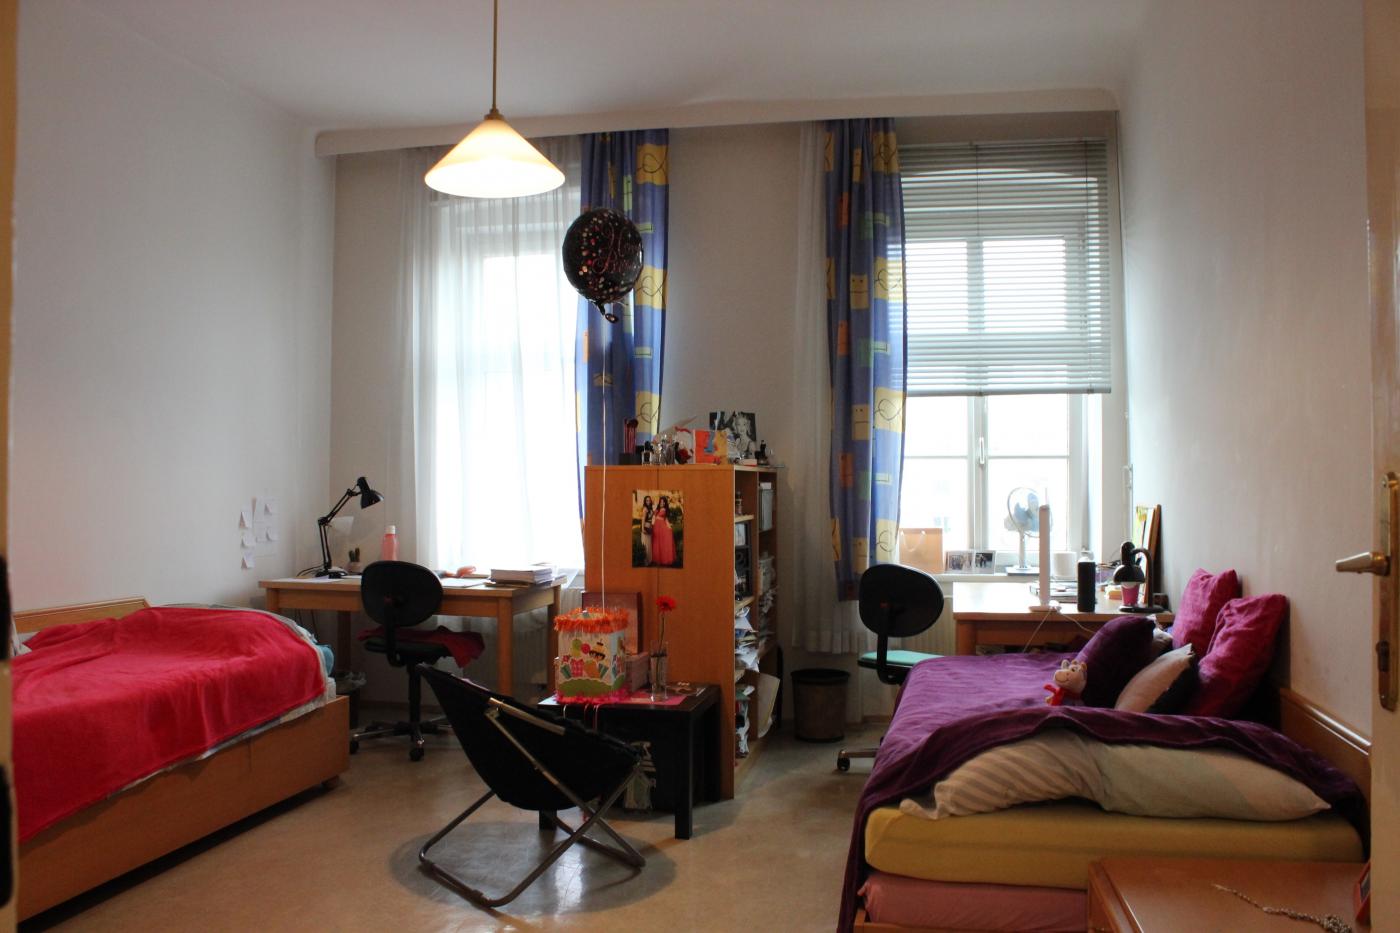 Ansicht auf ein Doppelzimmer im Mediatrix-Heim. (c) Akademikerhilfe Studentenunterstützungsverein